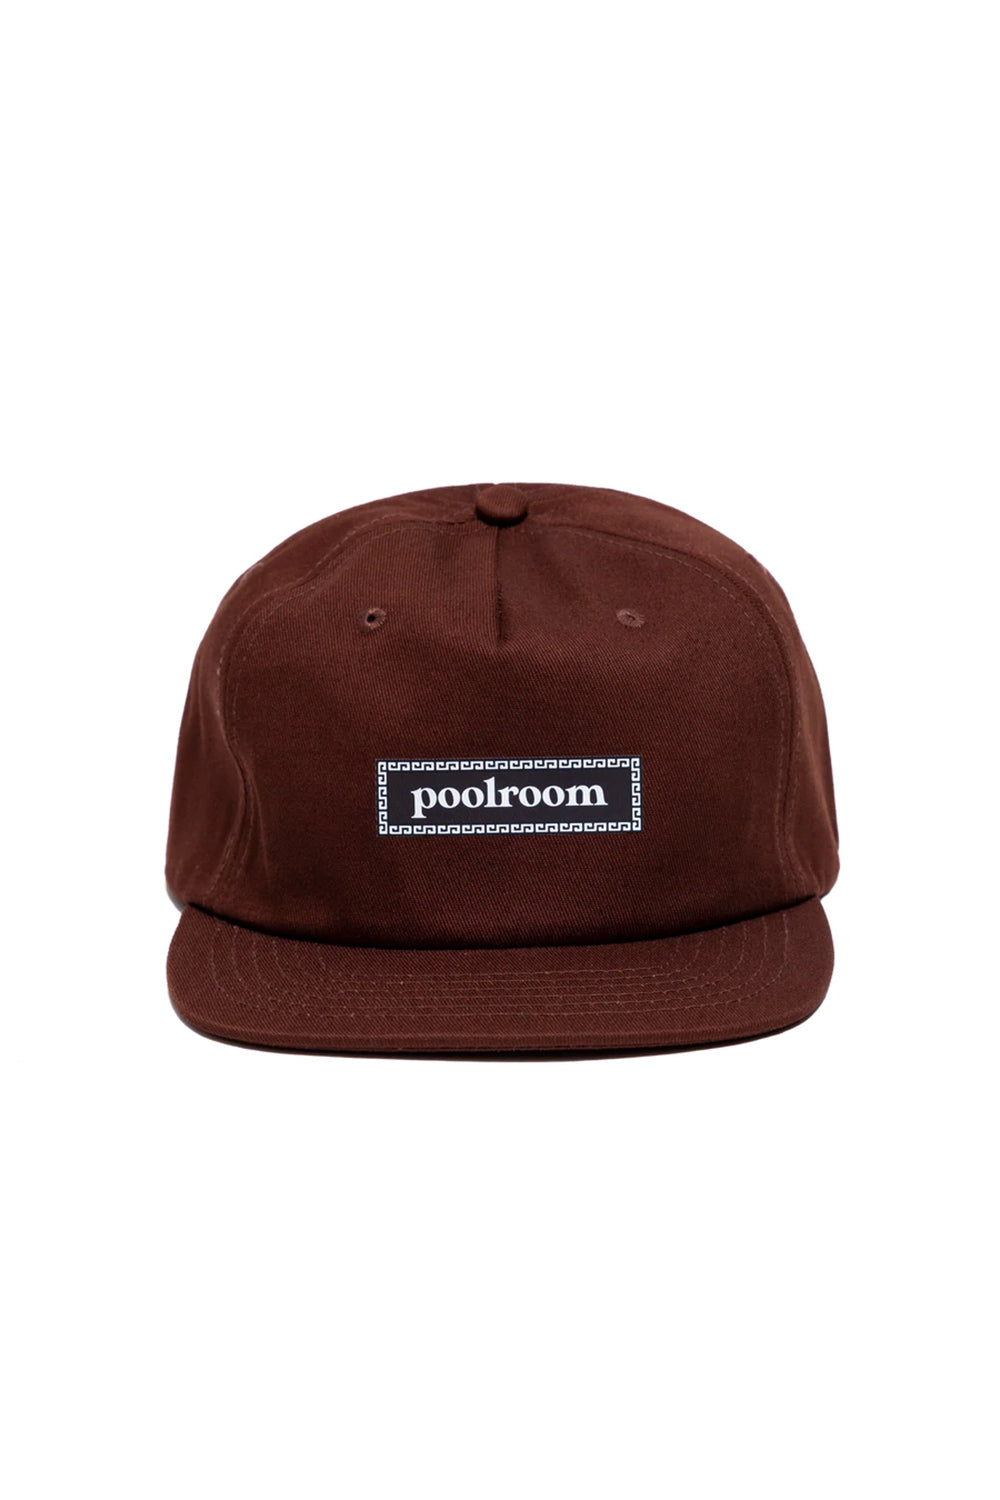 Poolroom Skateboards | Brown Snake 5 Panel Snap Back Hat